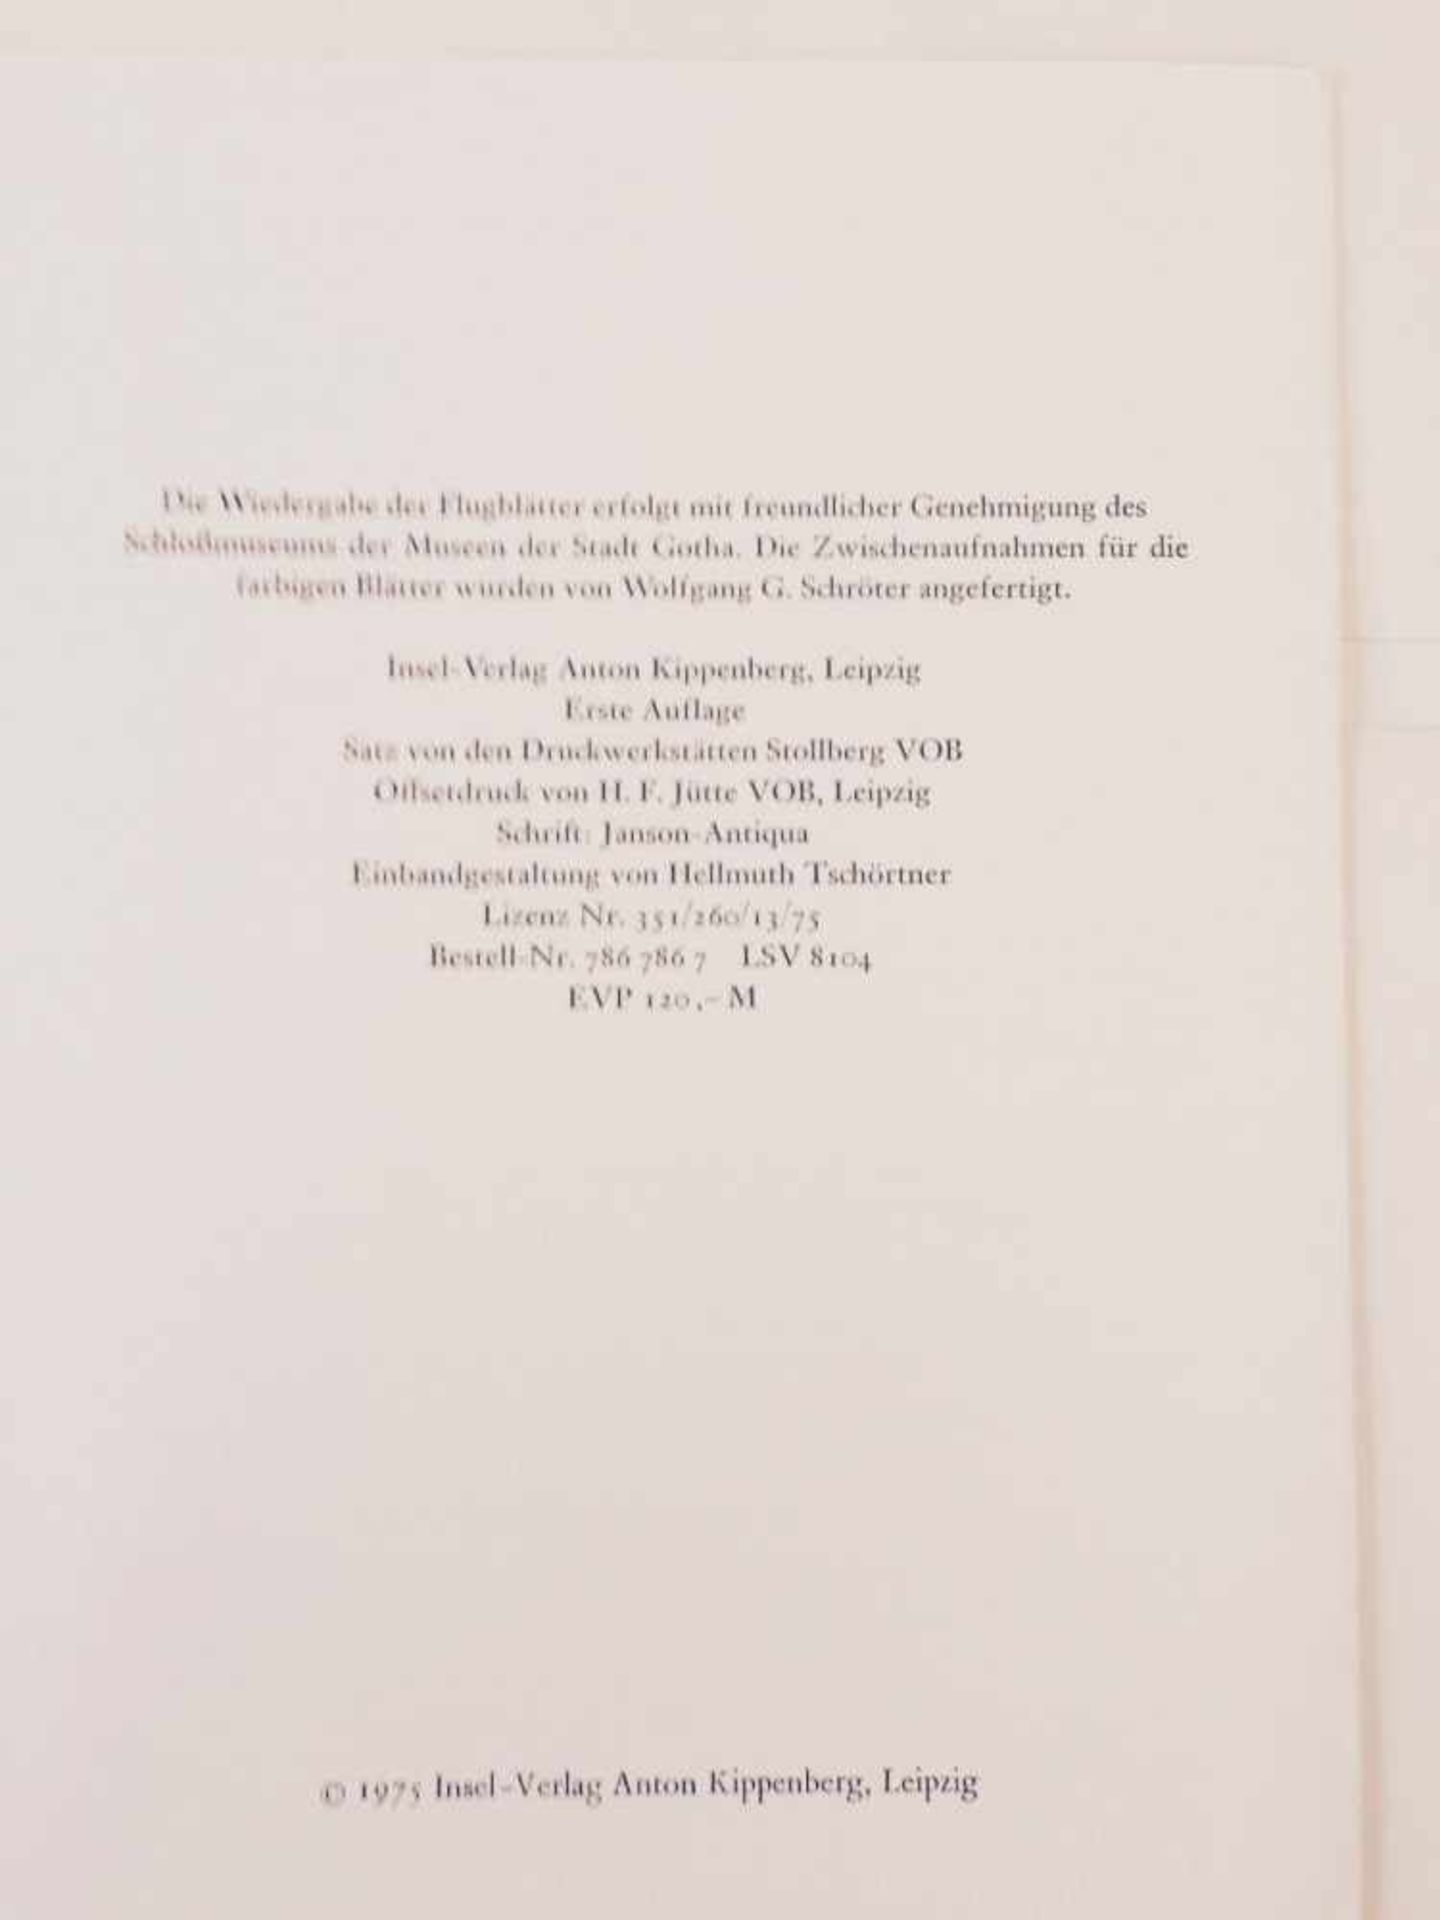 "FLUGBLÄTTER DER REFORMATION UND DES BAUERNKRIEGES", 50 teils kolorierte Blätter in Mappe,DDR 1975 - Bild 5 aus 8